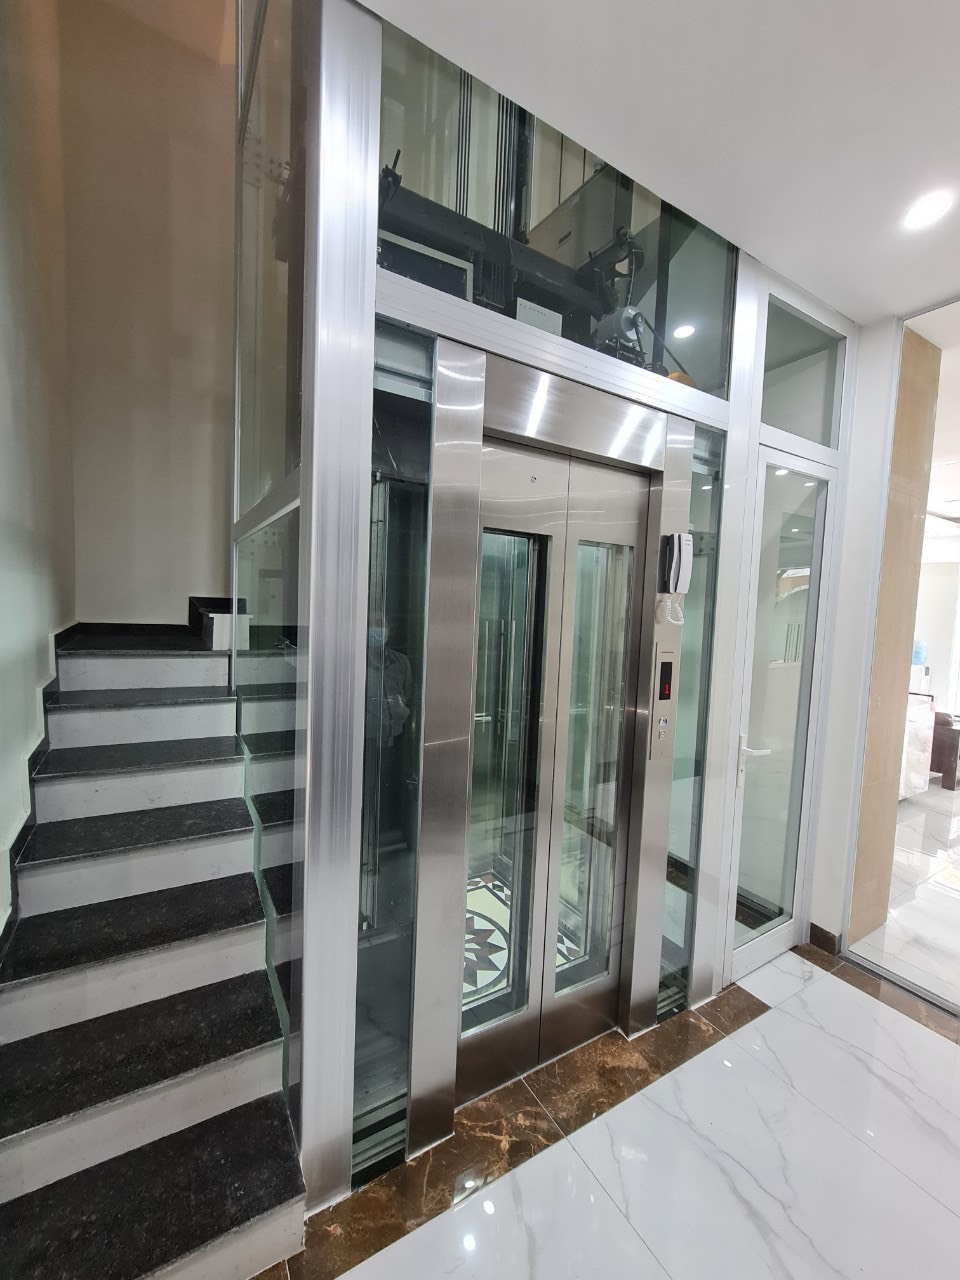 Cung cấp lắp đặt thang máy biệt thự hiện đại tại Ecopark Hưng Yên